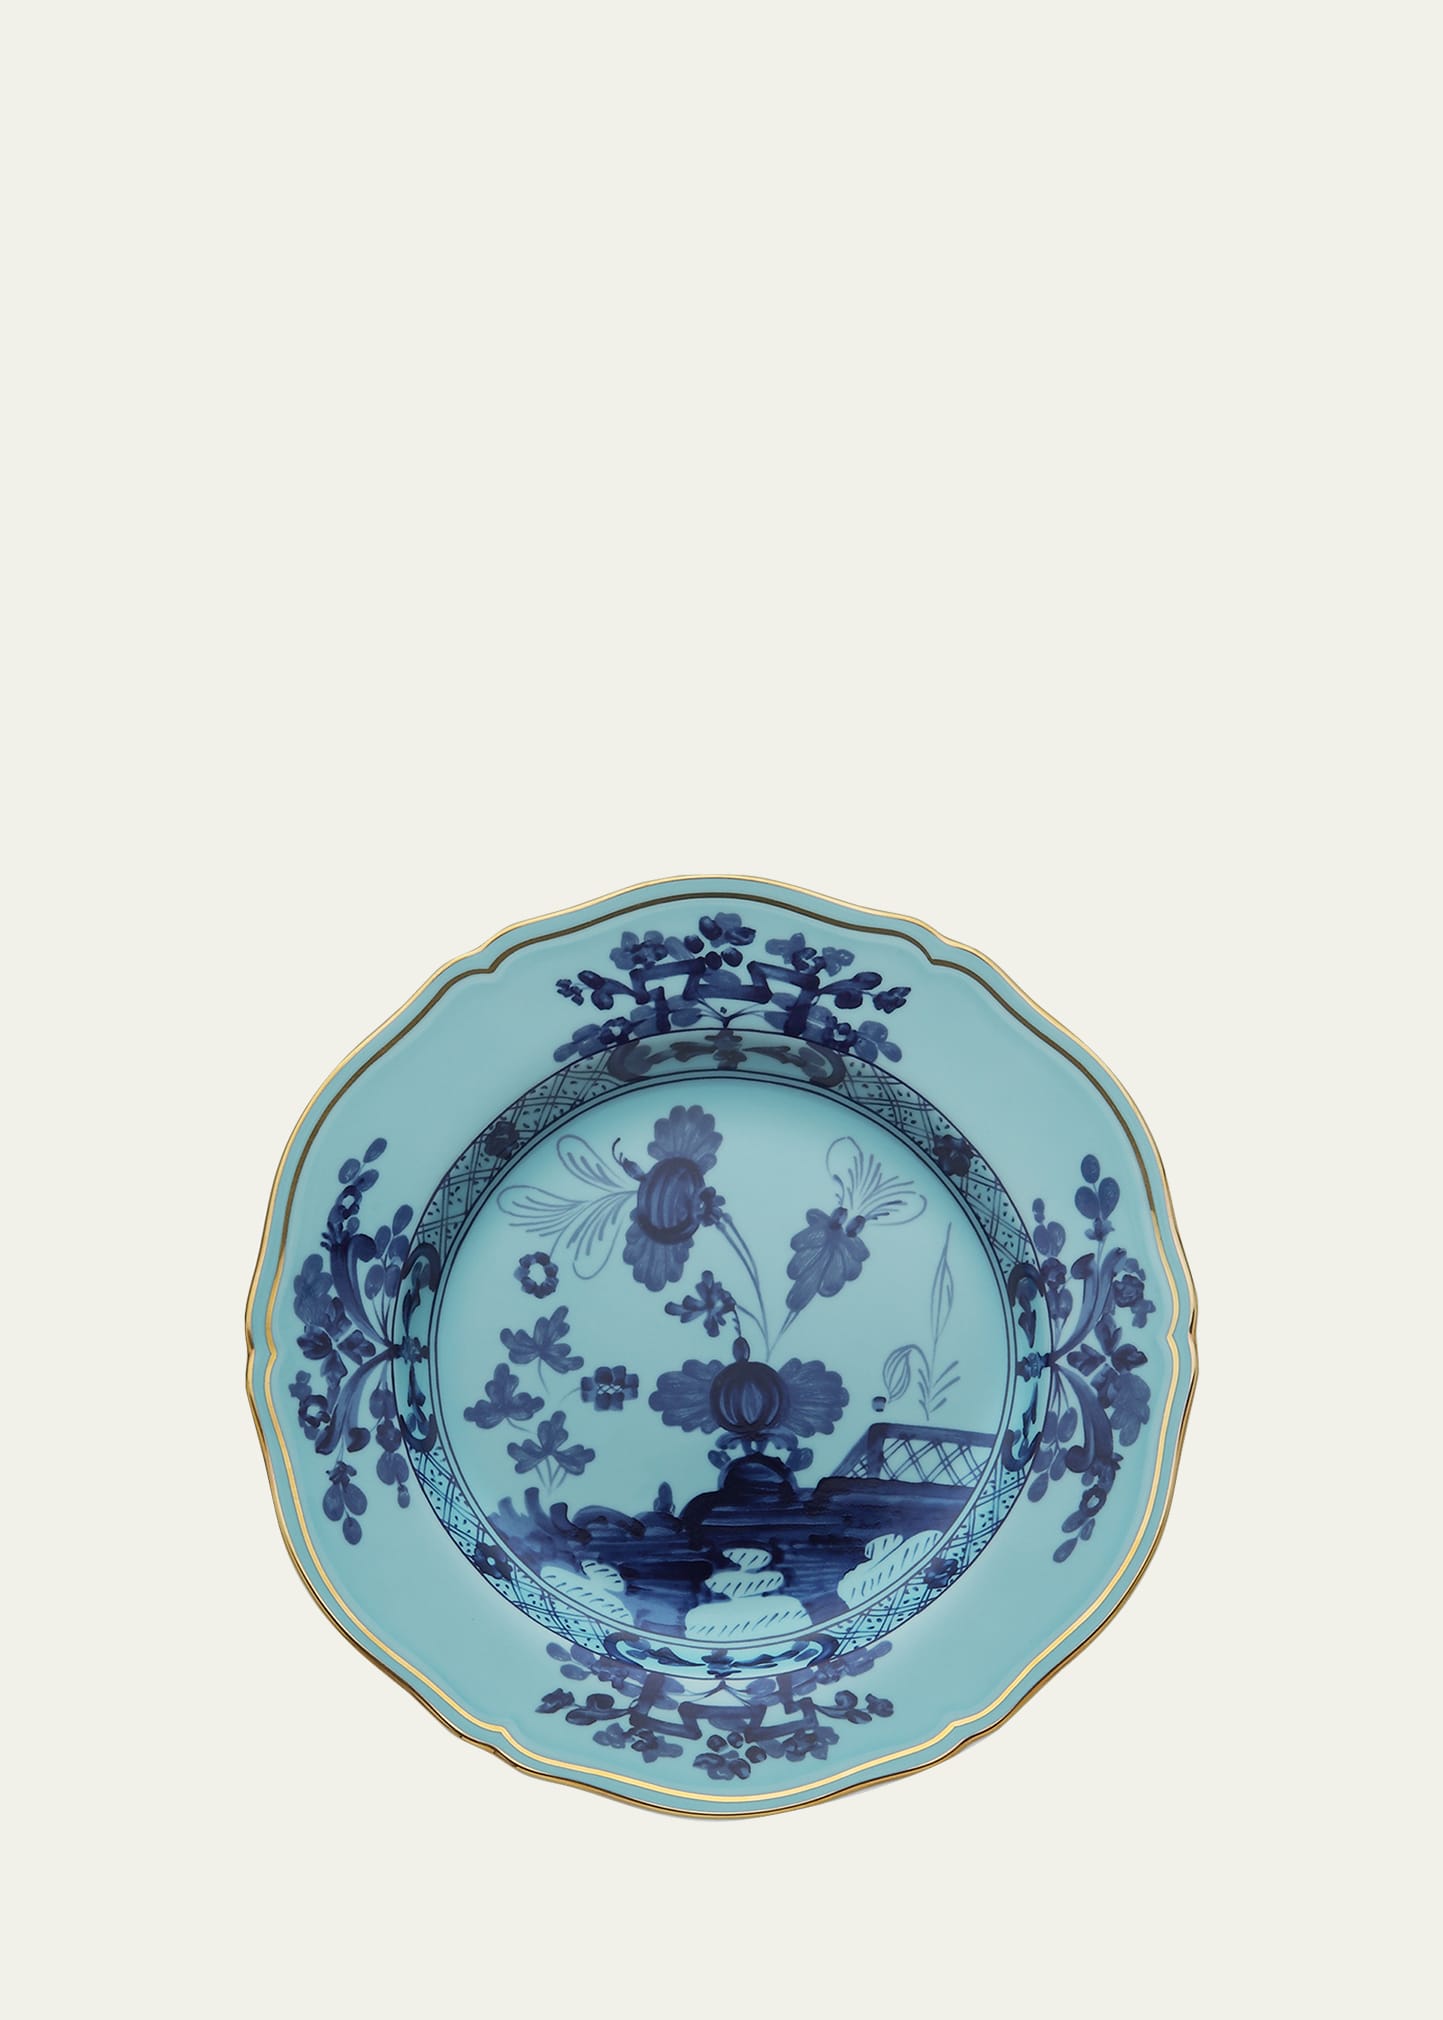 GINORI 1735 Oriente Italiano Dinner Plate, Iris